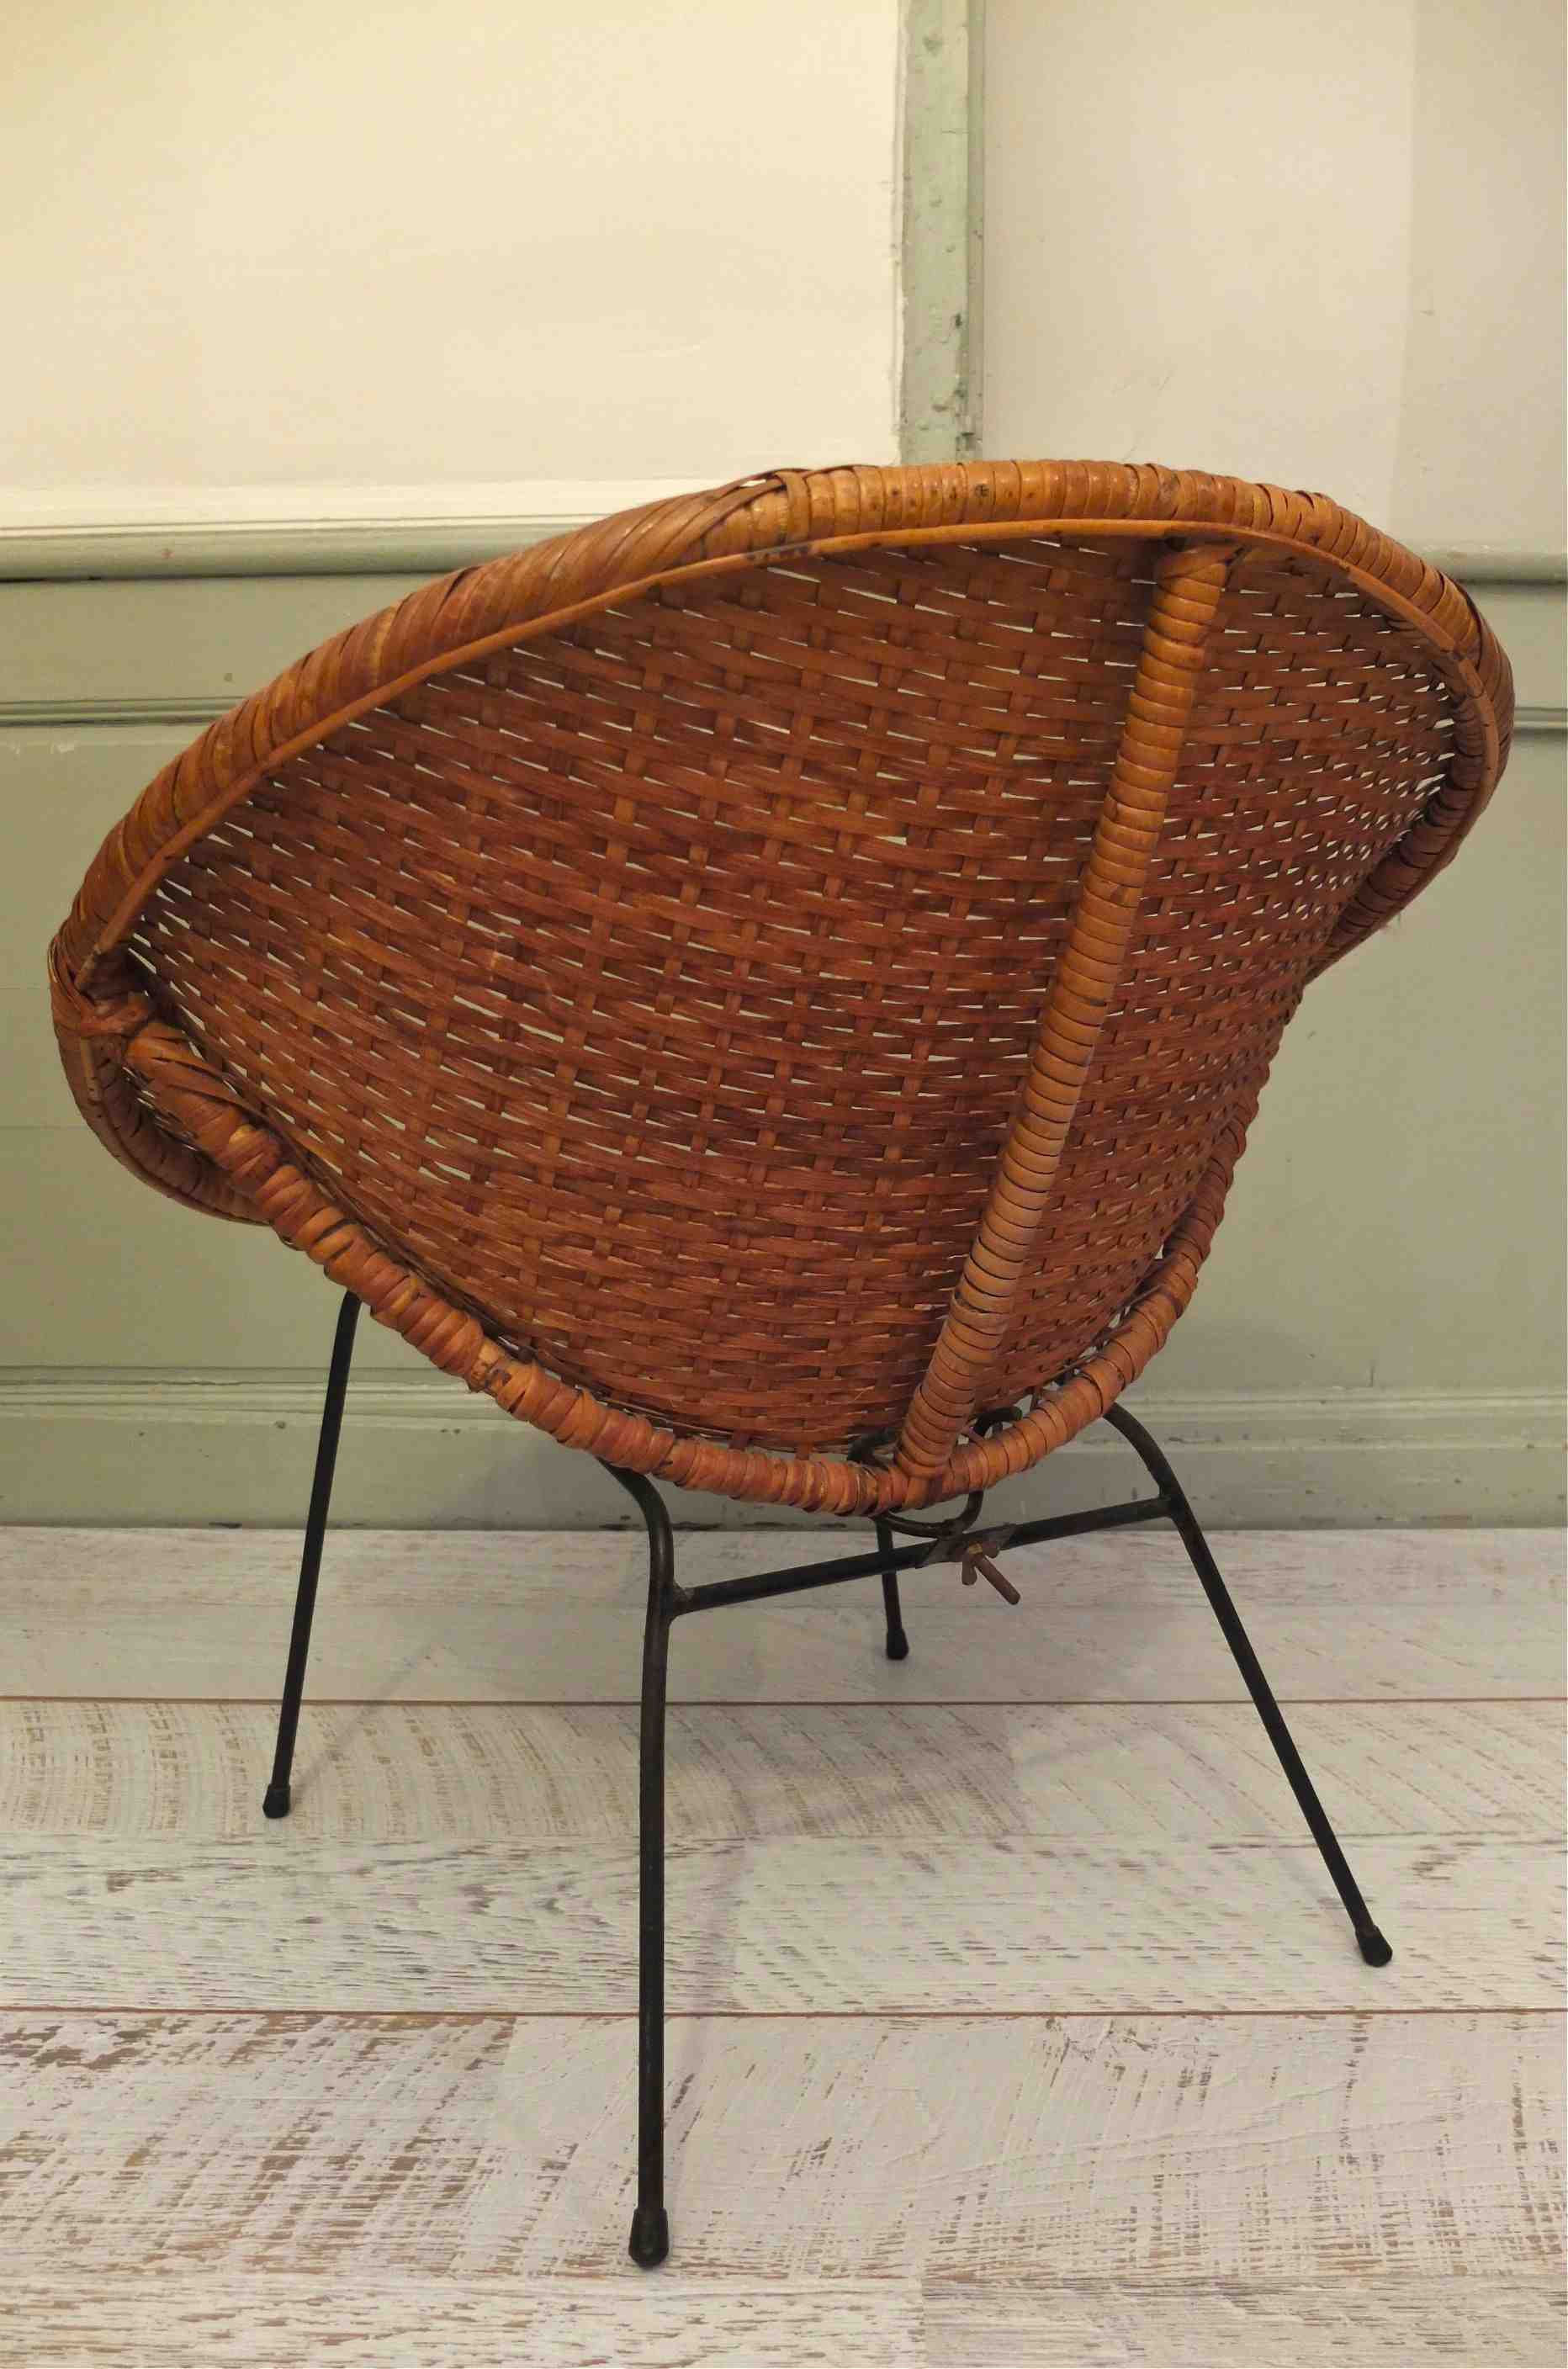 Slavia Vintage fauteuil des années 50 en osier vintage style Janine Abraham "Copacabana" dossier photo latérale